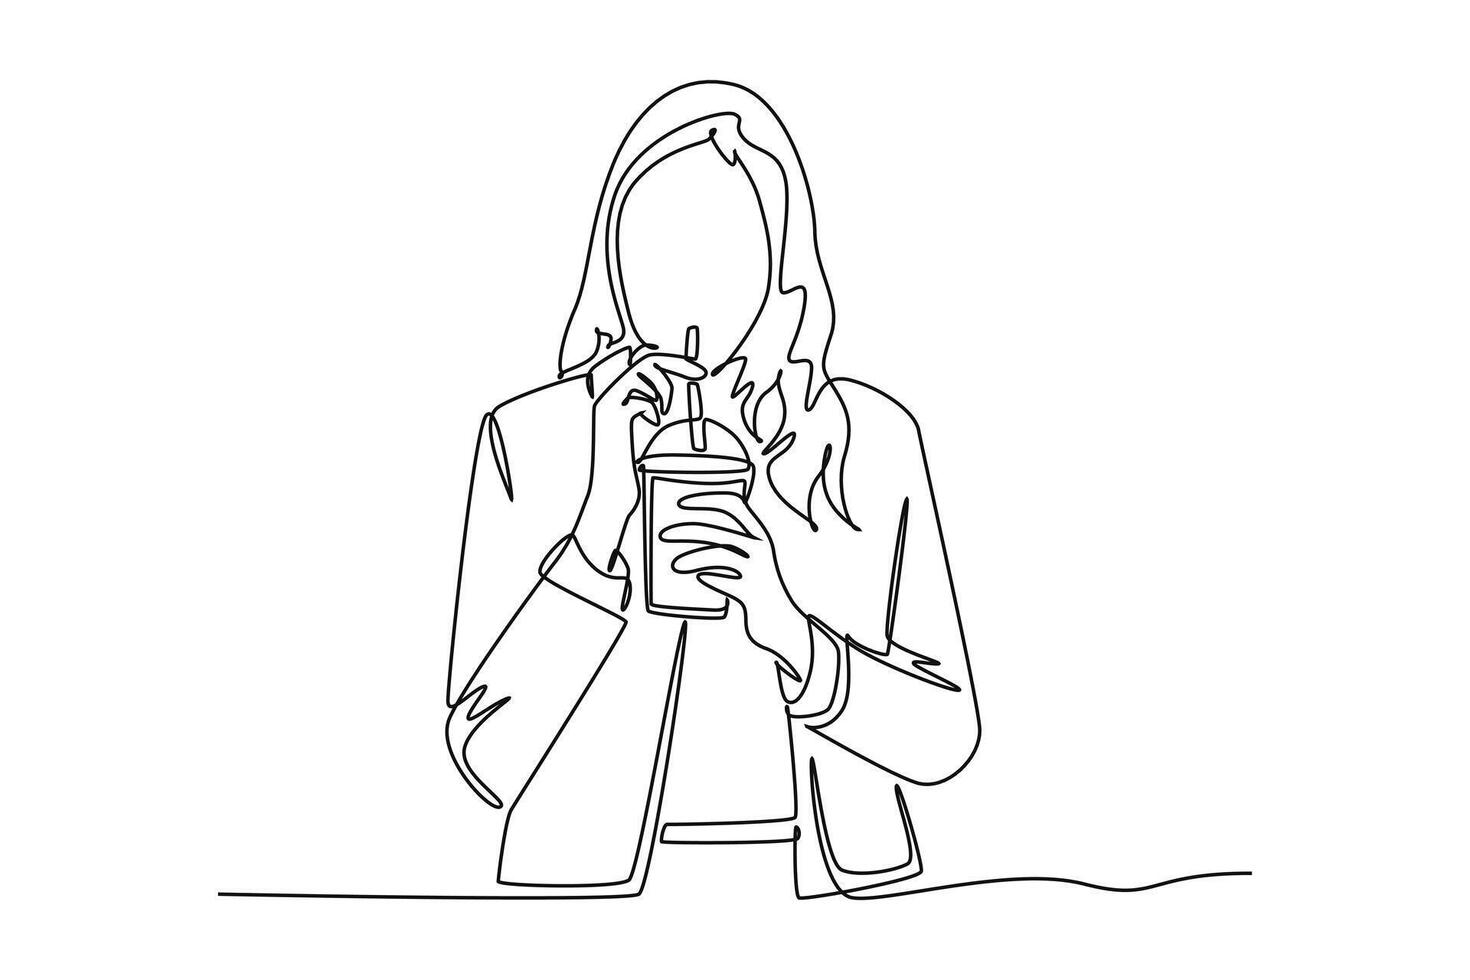 doorlopend een lijn tekening drinken koffie concept. tekening illustratie. vector